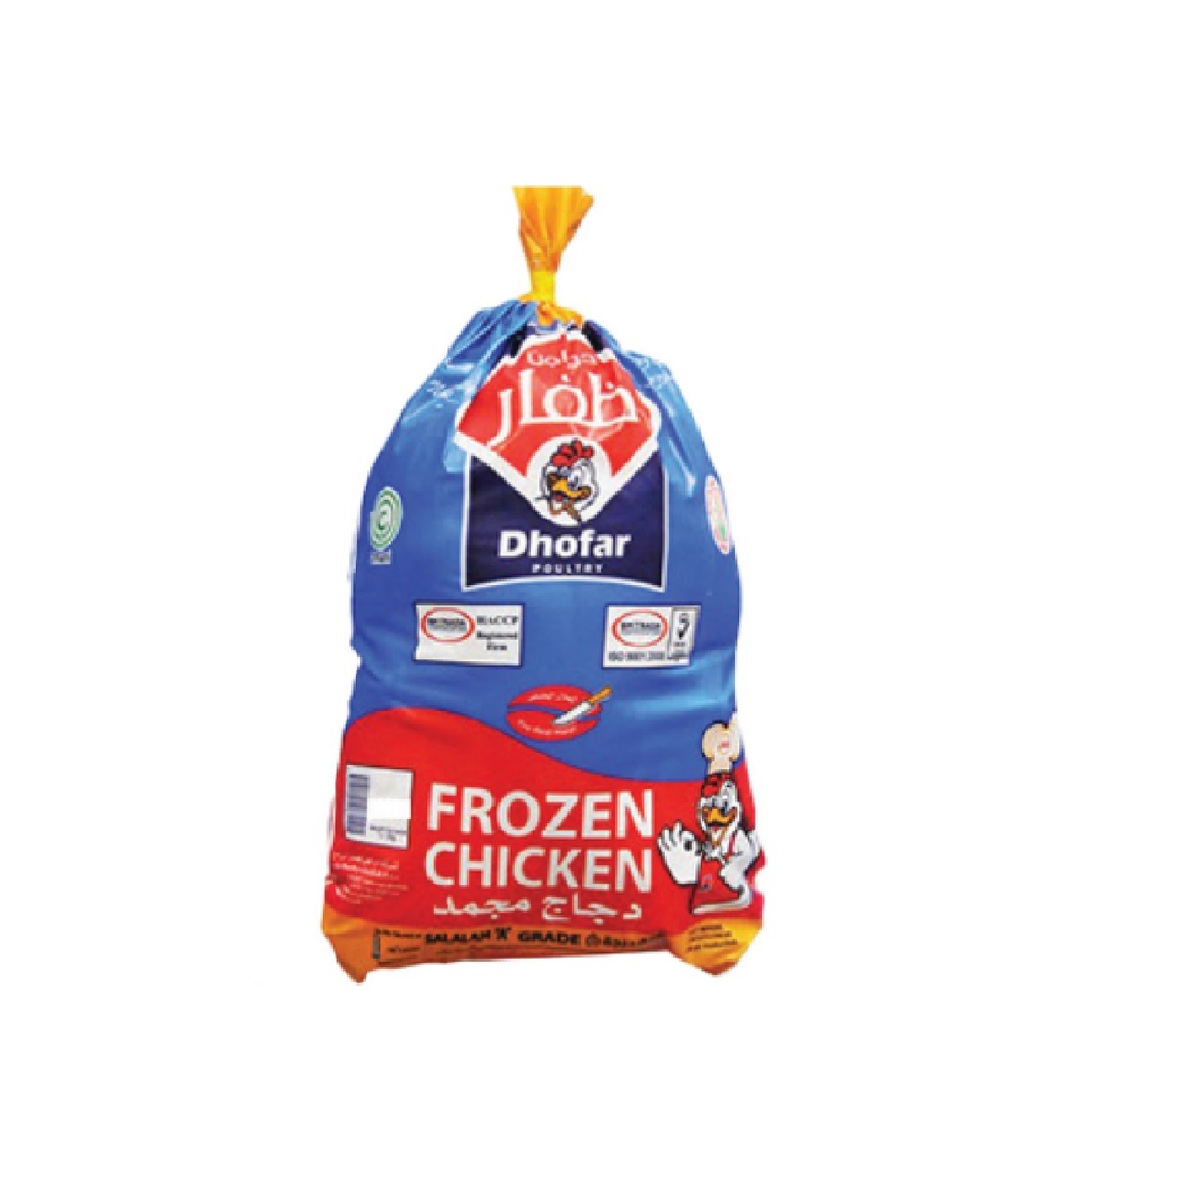 Dhofar Frozen Chicken 10 x 600g